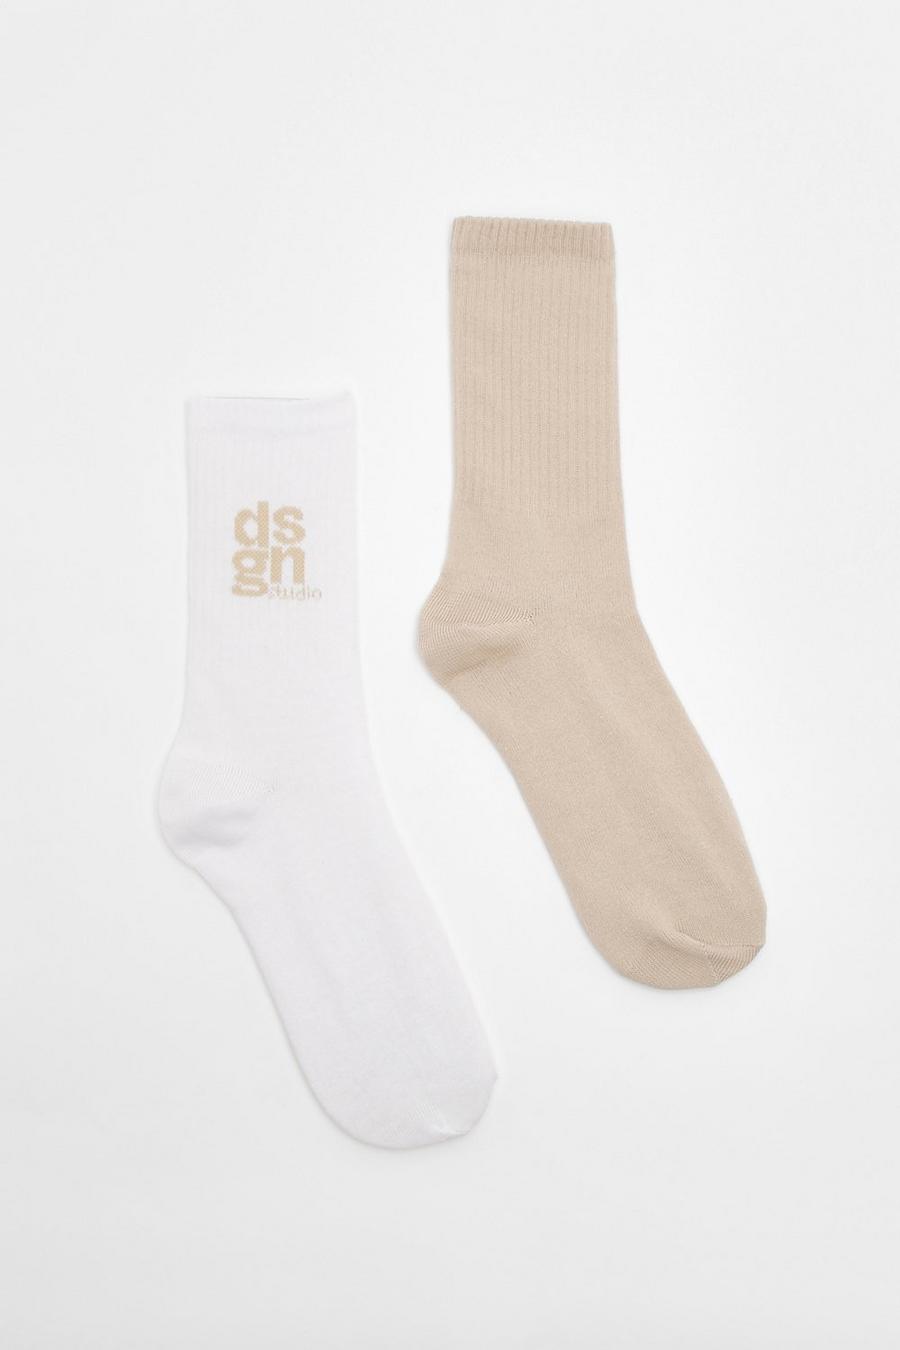 Pack de 2 pares de calcetines deportivos con eslogan Dsgn Studio, Cream